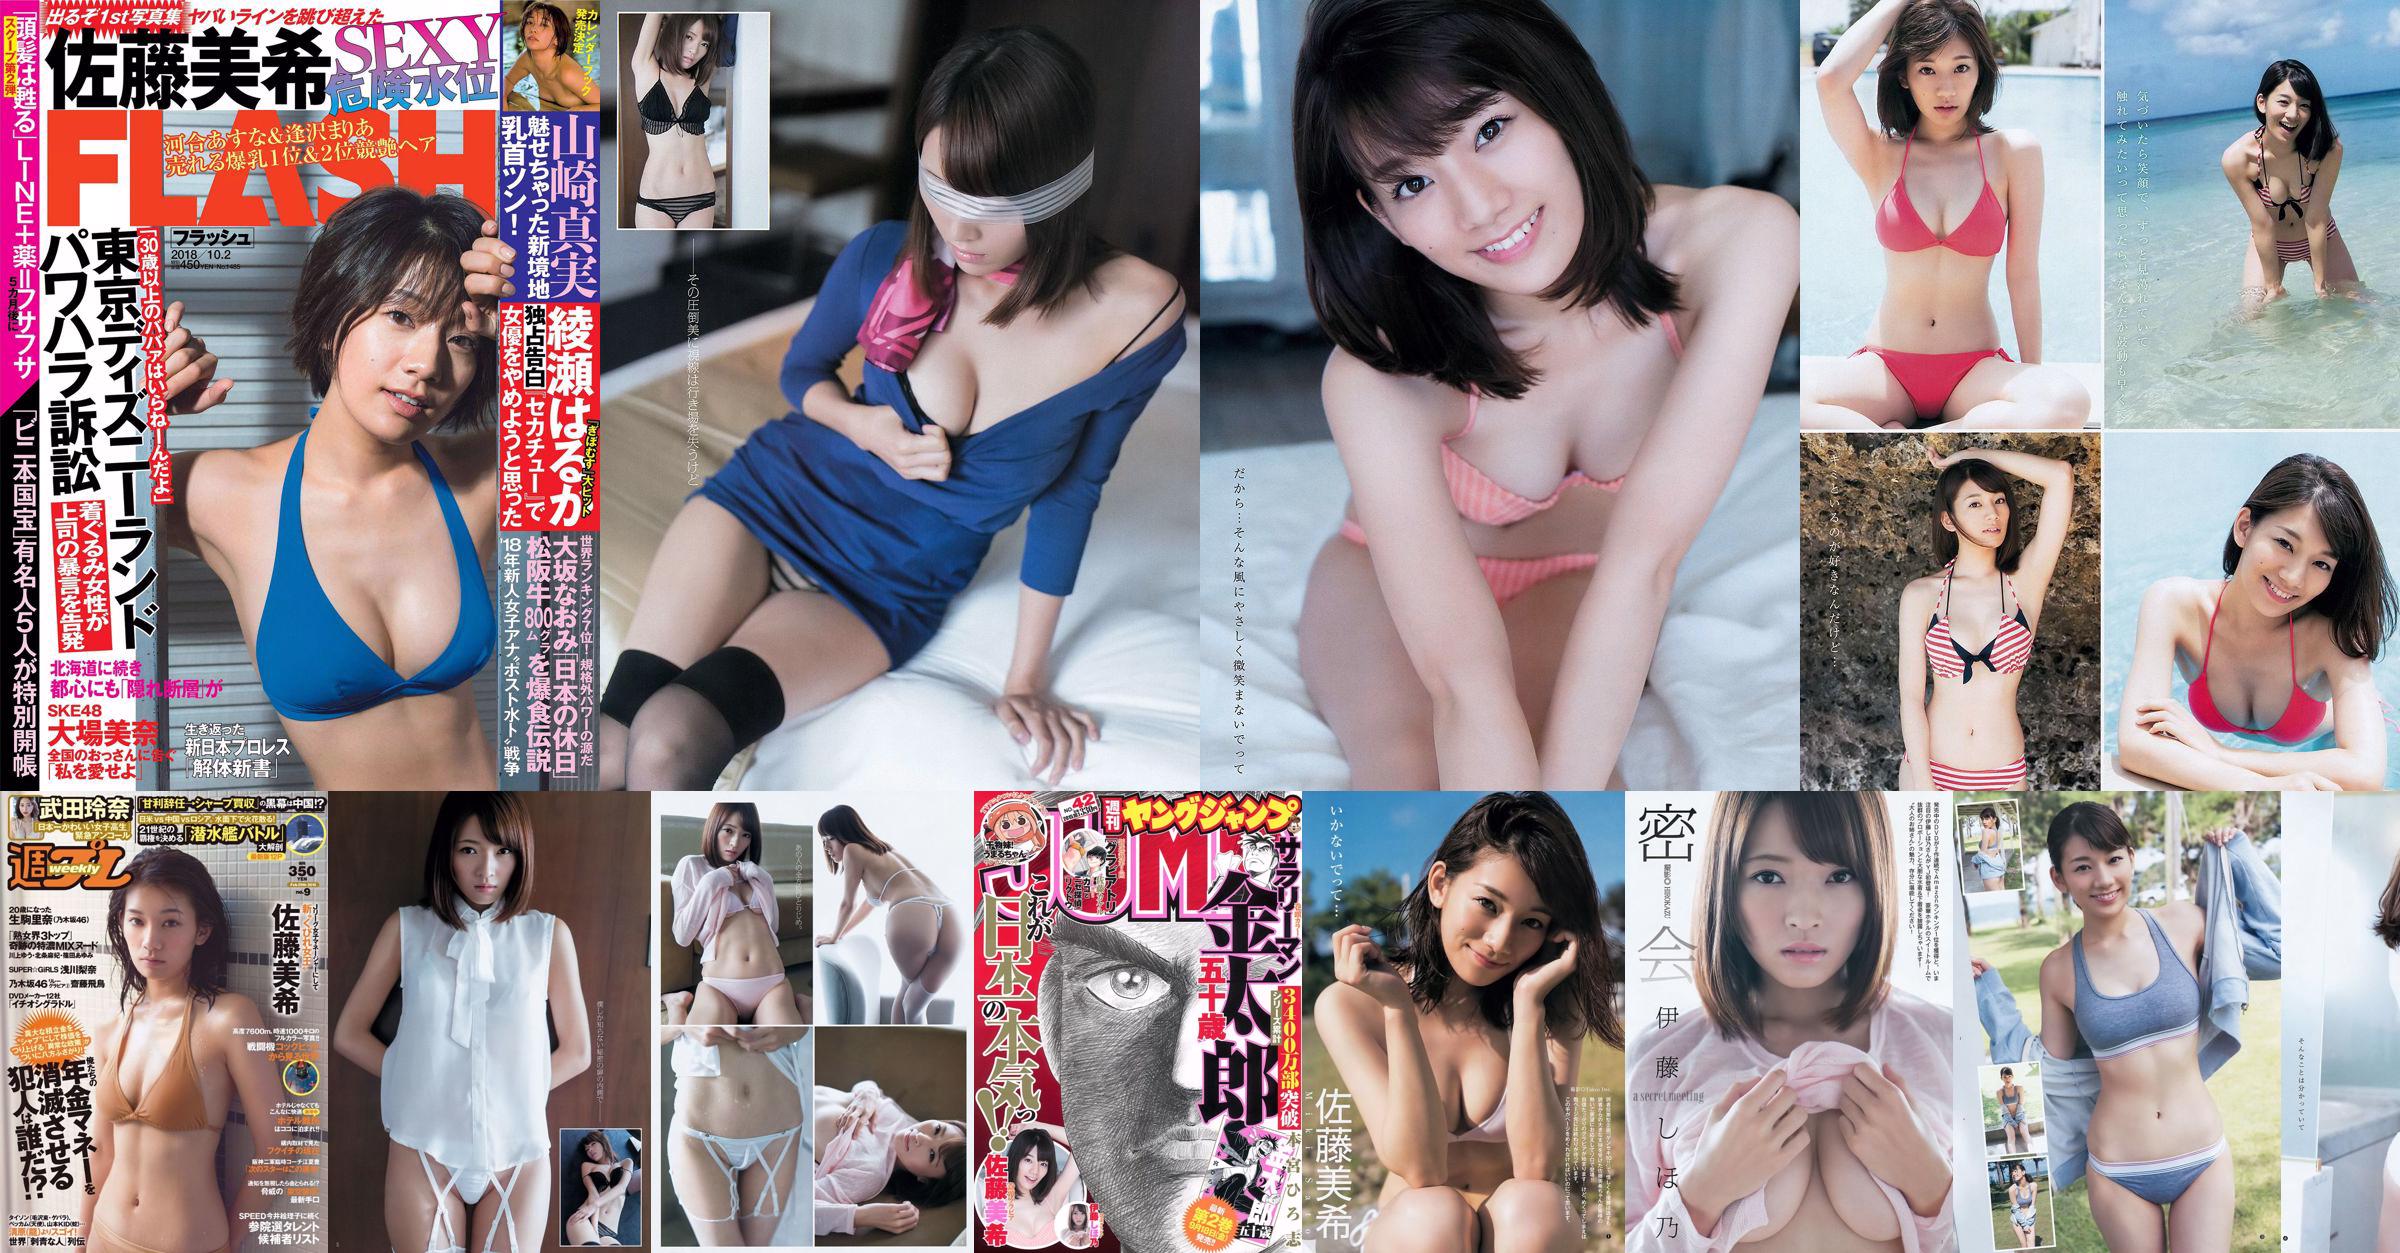 Sato Maki Ito Kayano [Weekly Young Jump] Tạp chí ảnh số 42 năm 2015 No.dd4541 Trang 1